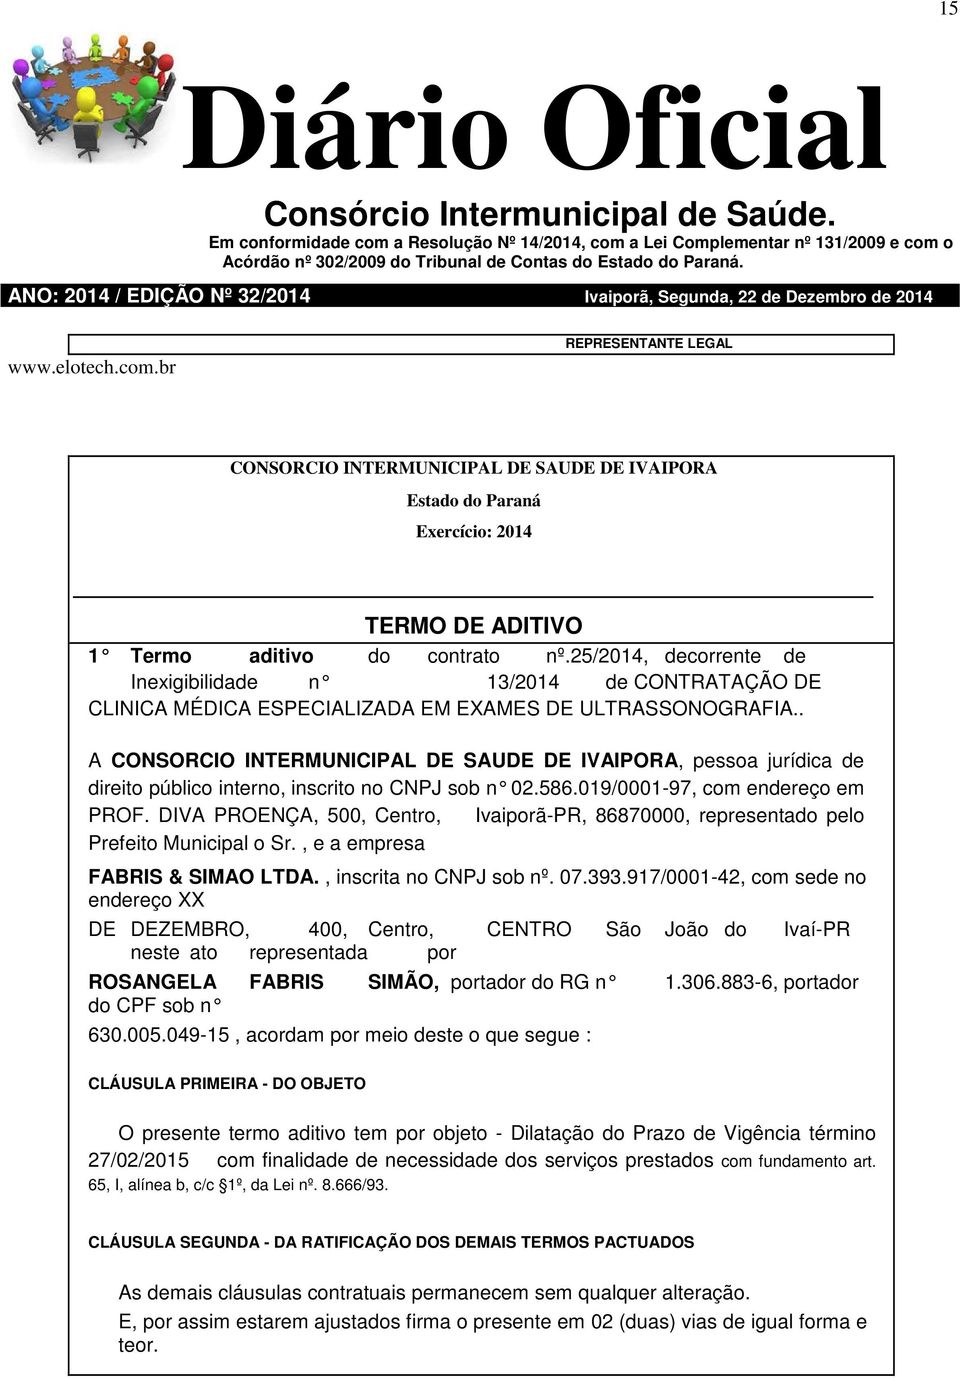 DIVA PROENÇA, 500, Centro, Ivaiporã-PR, 86870000, representado pelo Prefeito Municipal o Sr., e a empresa FABRIS & SIMAO LTDA., inscrita no CNPJ sob nº. 07.393.